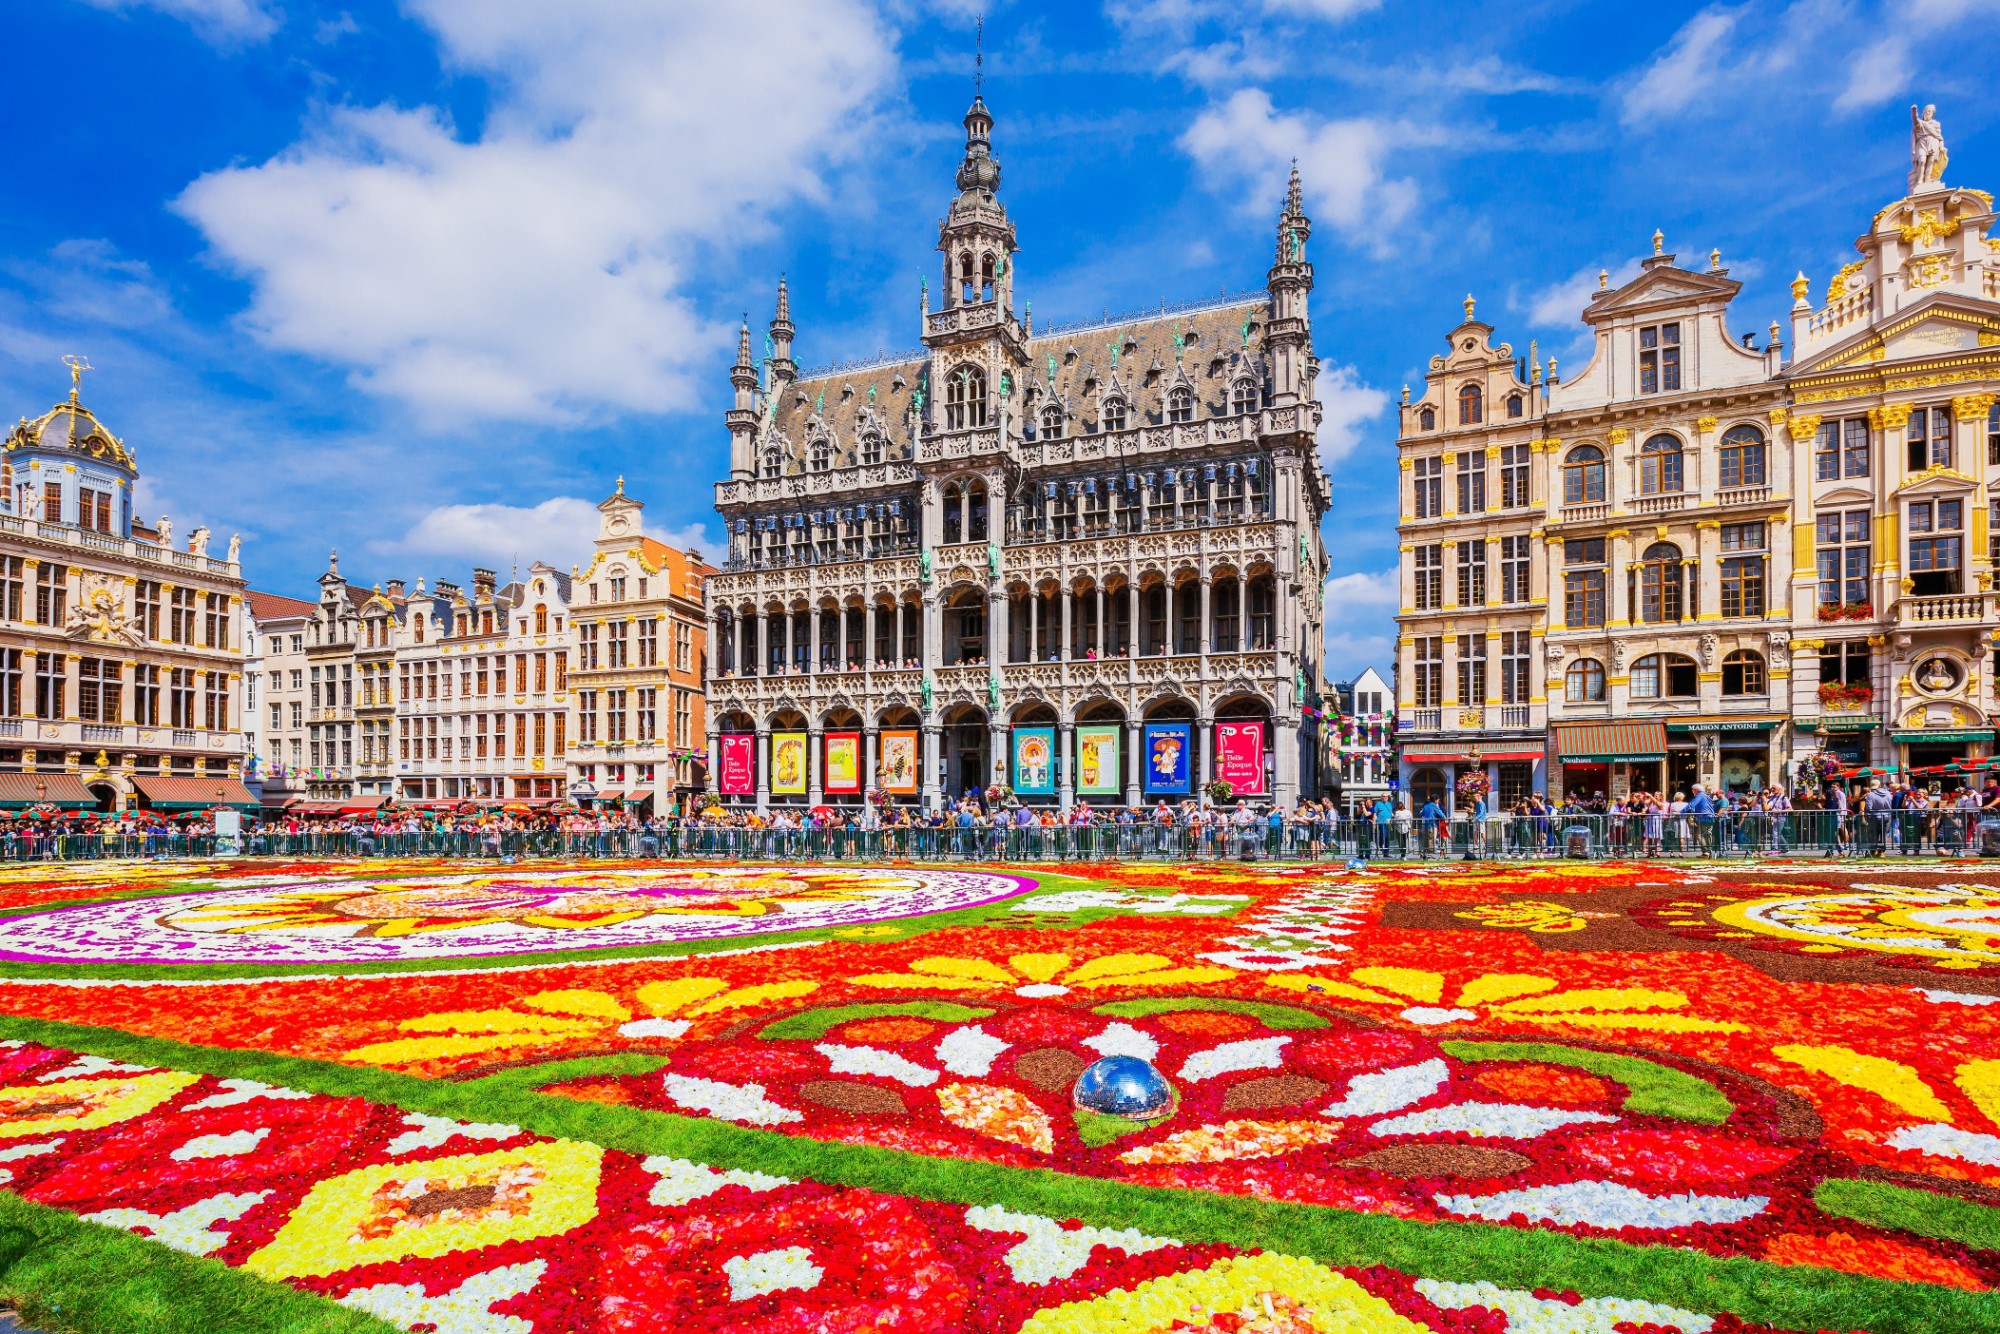  Quảng trường lớn The Grand Place vào dịp lễ với bức tranh hoa khổng lồ ở giữa, điểm đến không thể bỏ qua khi đi tour du lịch Châu Âu